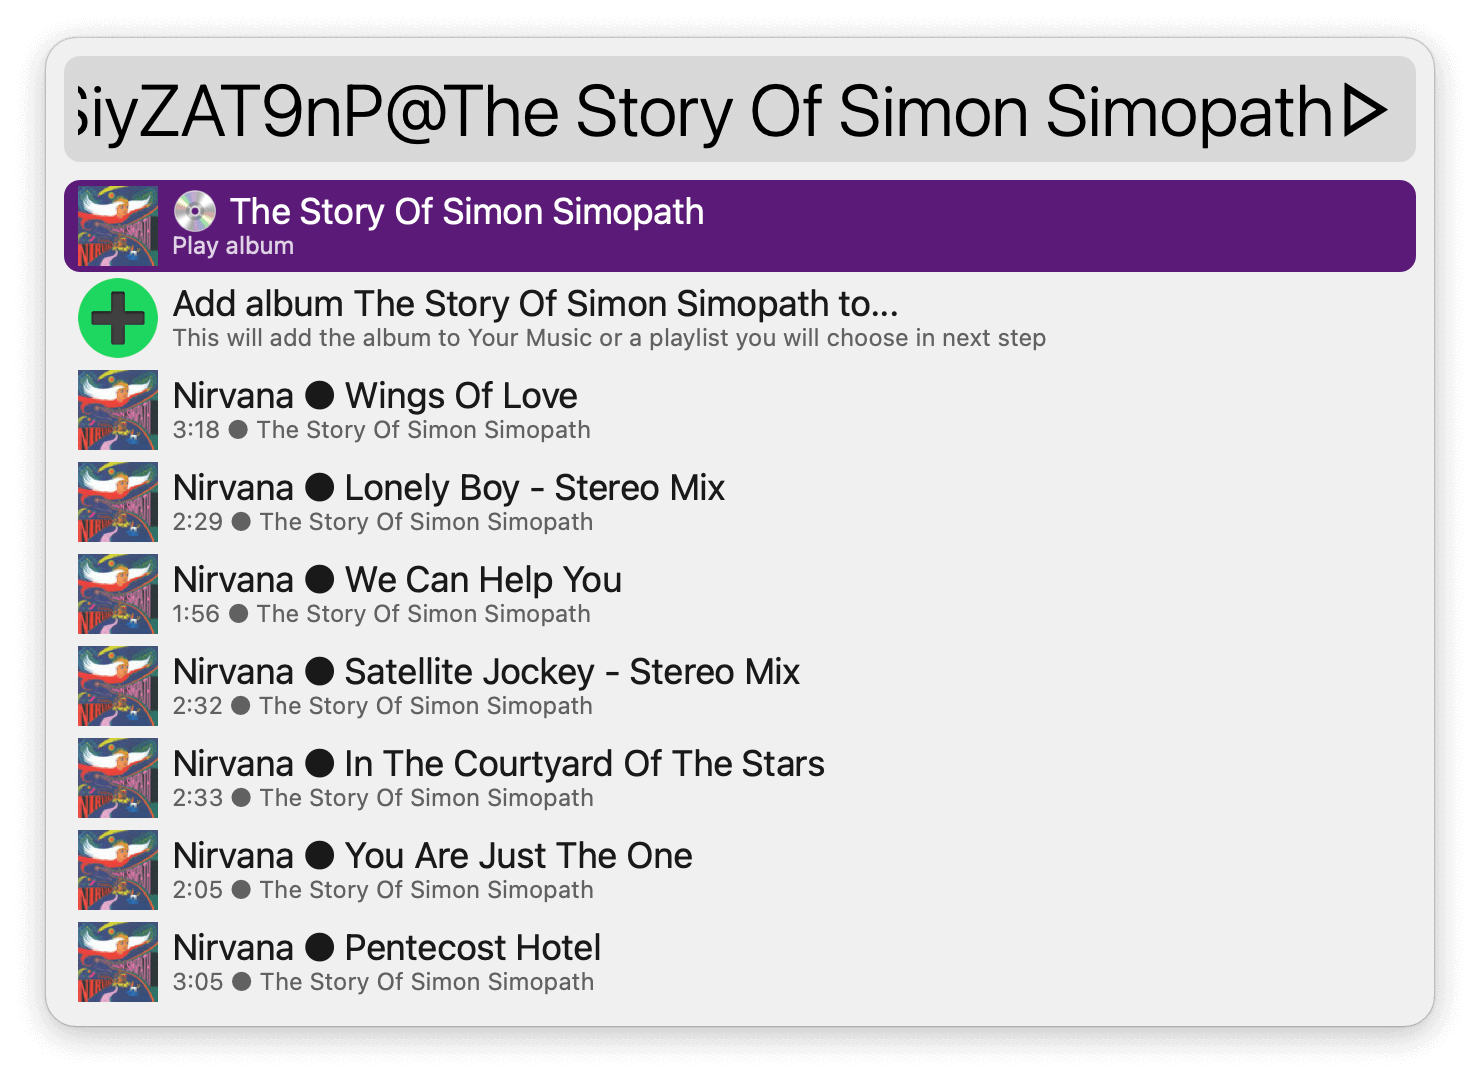 Listing songs for The Story of Simon Simopath